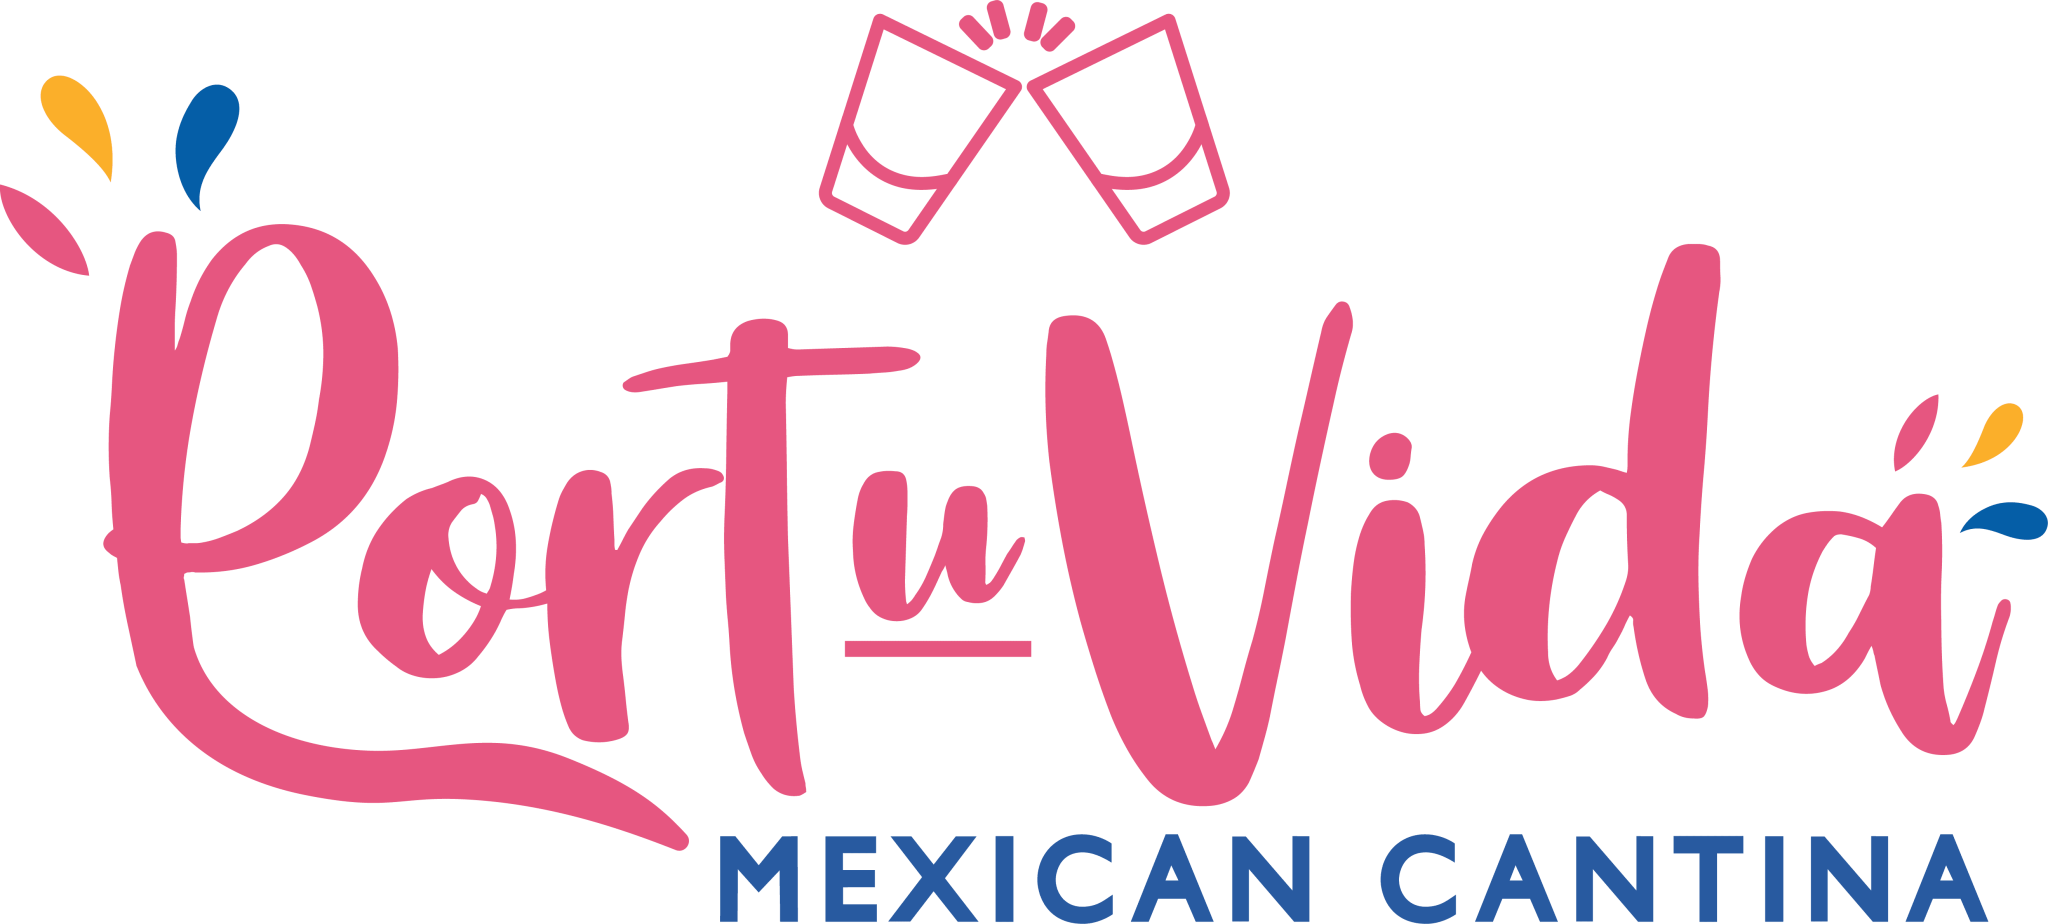 Port Vida a Mexican Cantina logo scroll